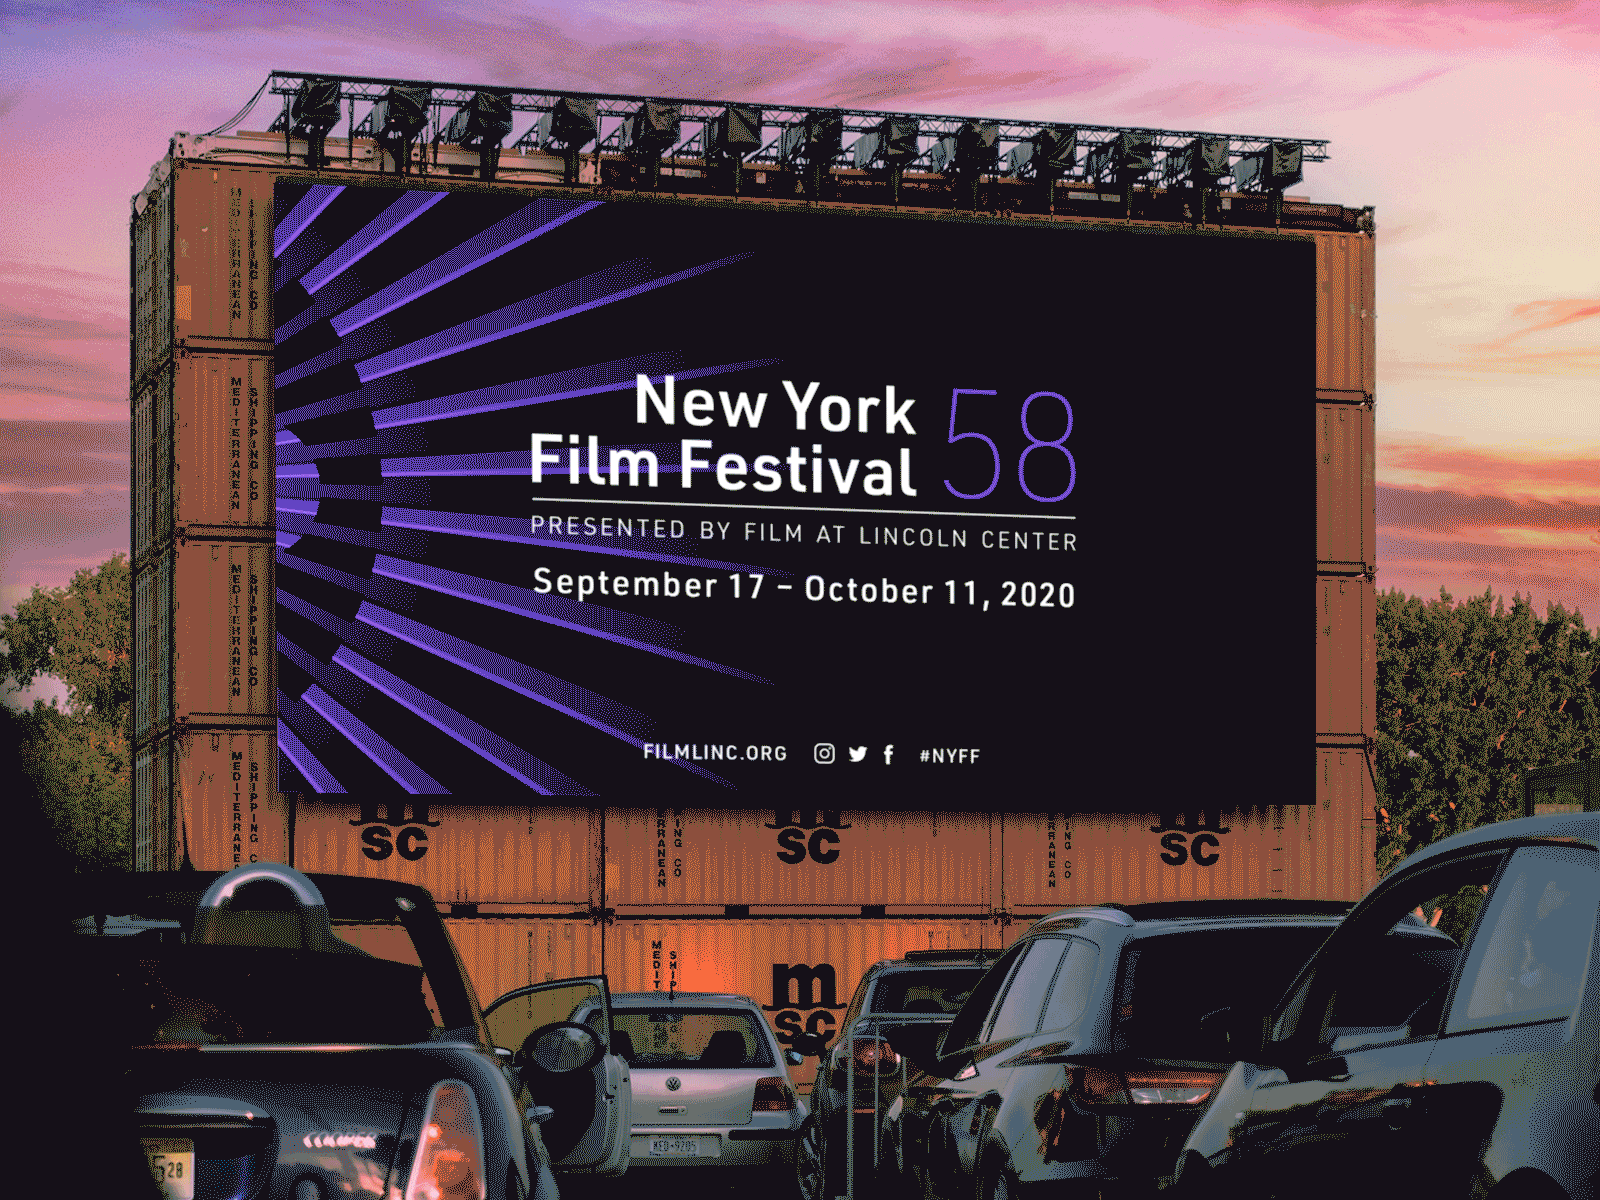 New York Film Festival 58